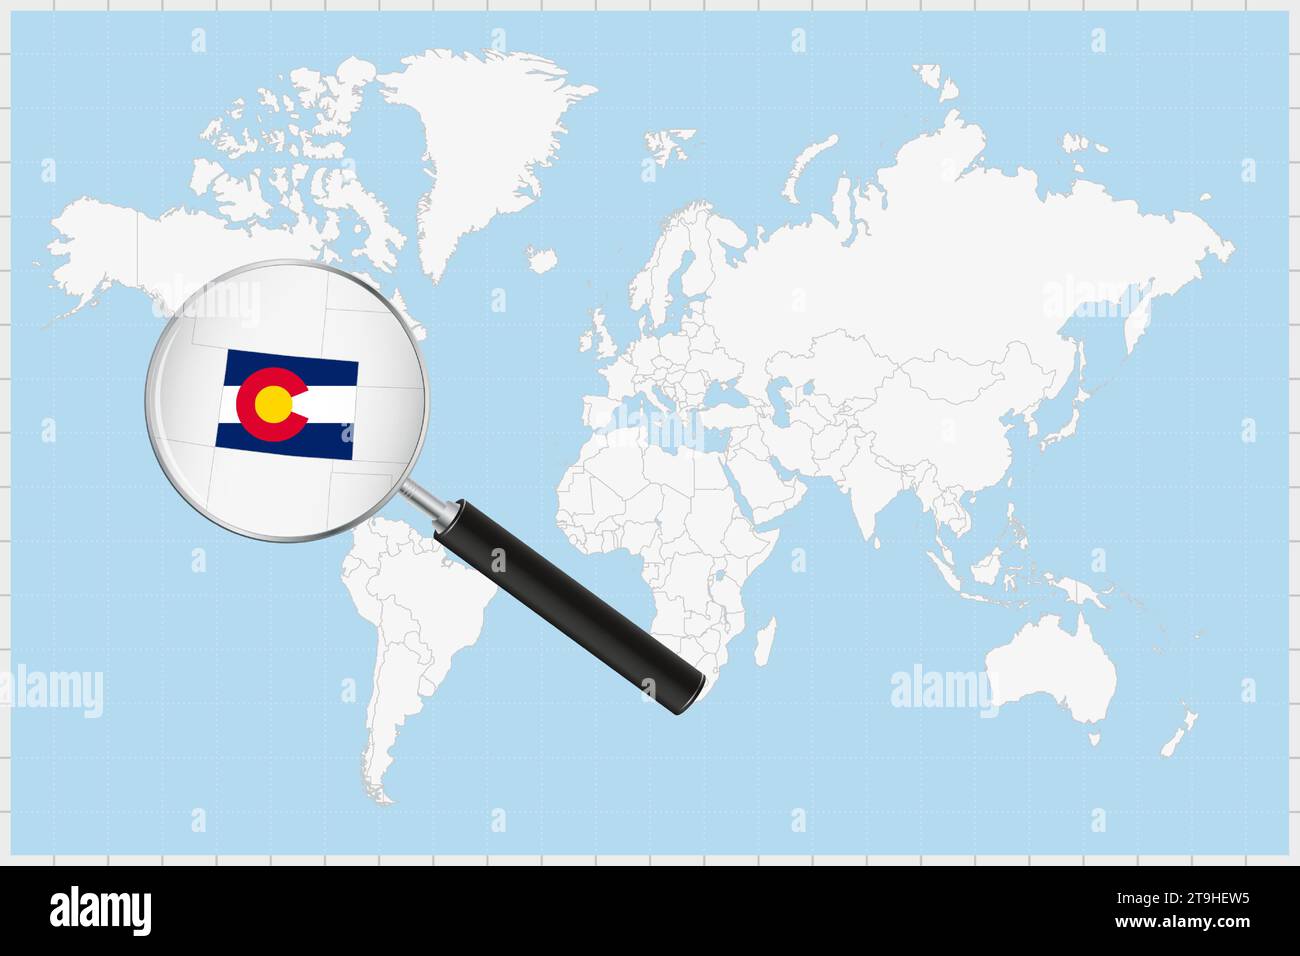 Vergrößerungsglas zeigt eine Karte von Colorado auf einer Weltkarte. Colorado-Flagge und Karte im Objektiv vergrößern. Vektorabbildung. Stock Vektor